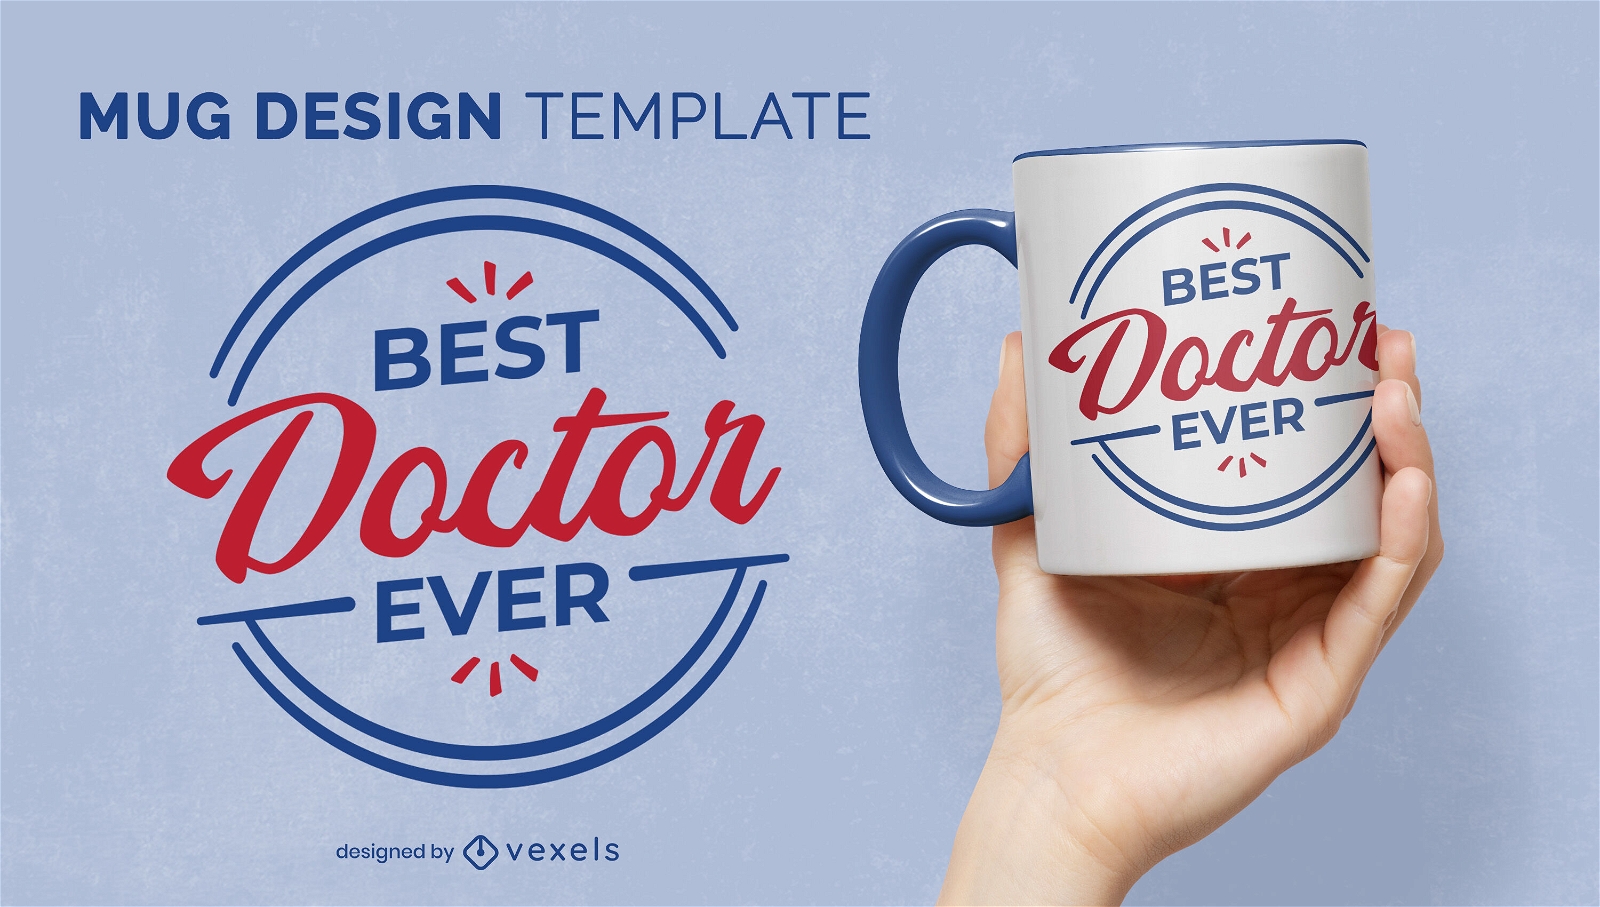 Best doctor ever statement mug design